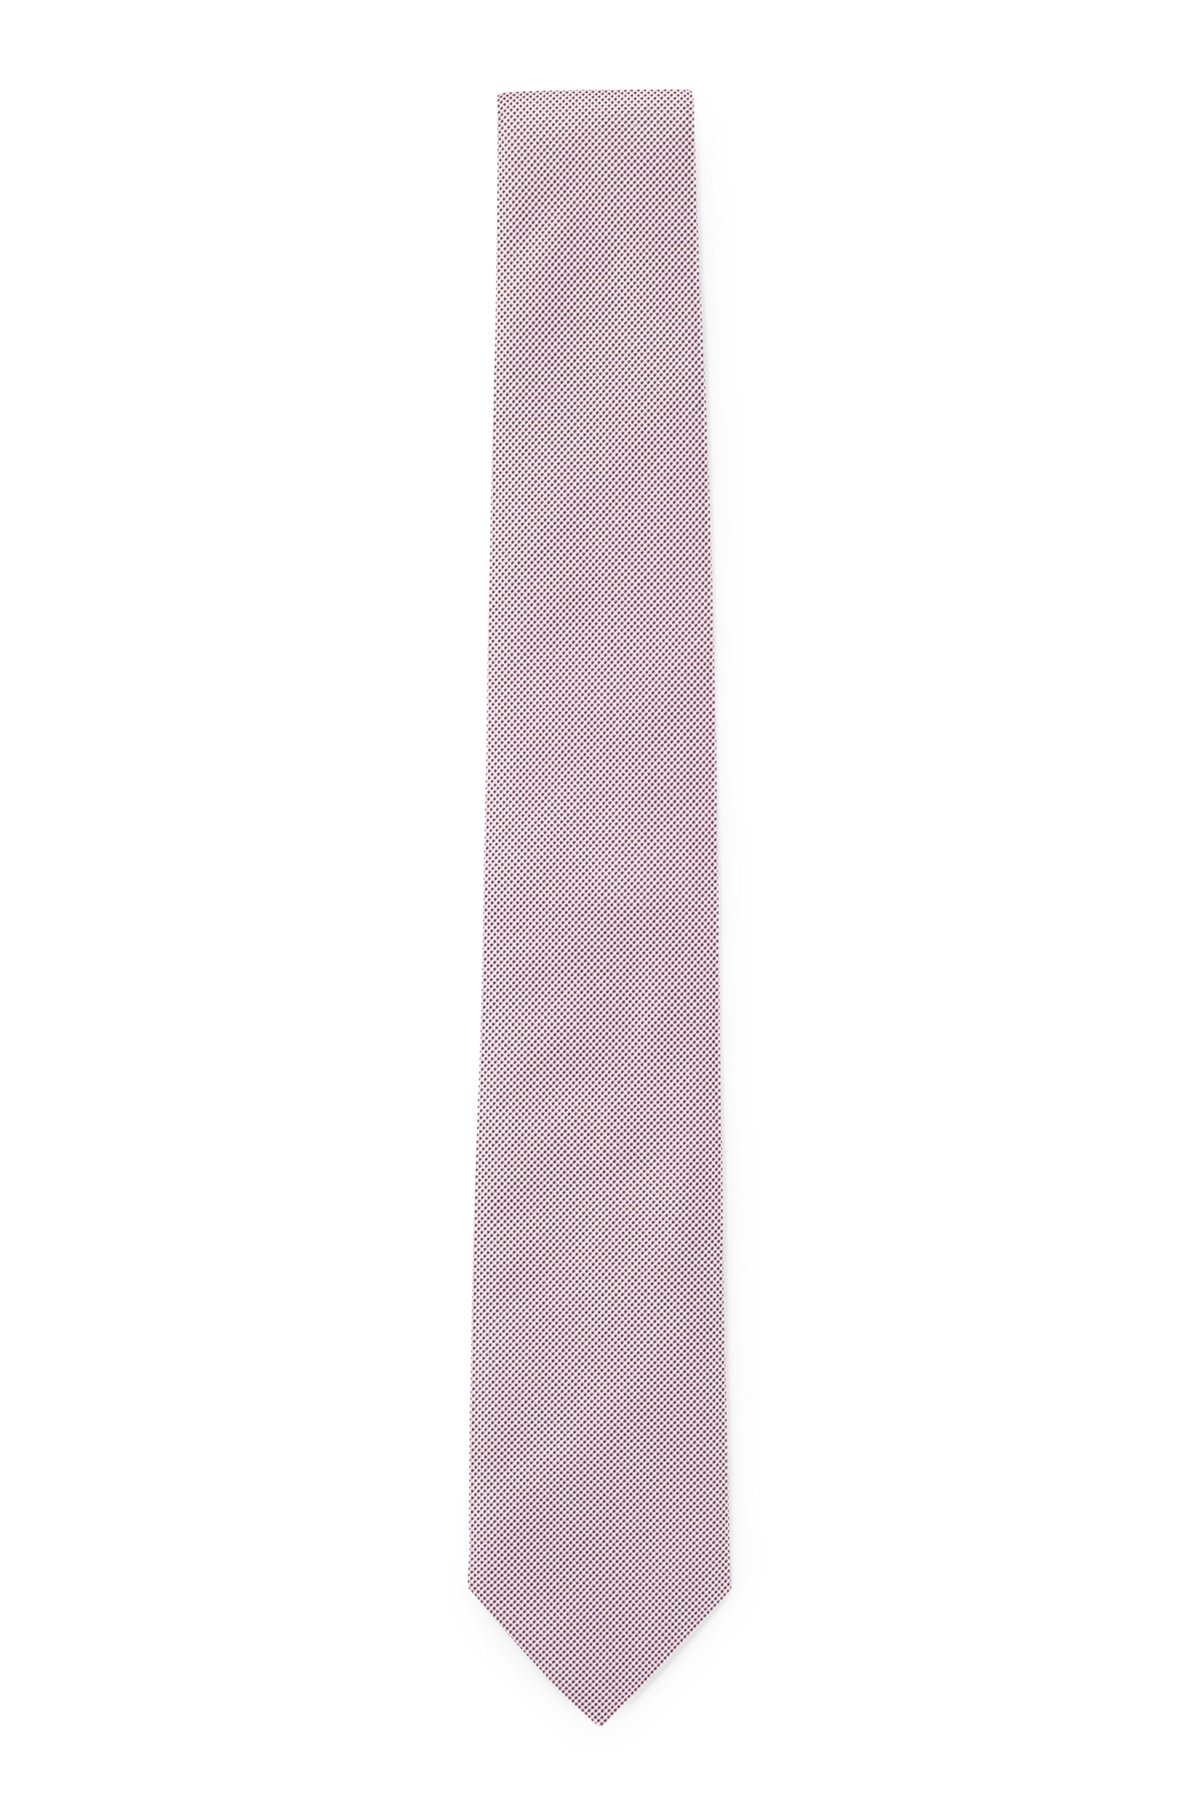 Cravate en soie pure avec micro motif en jacquard tissé, Rose clair